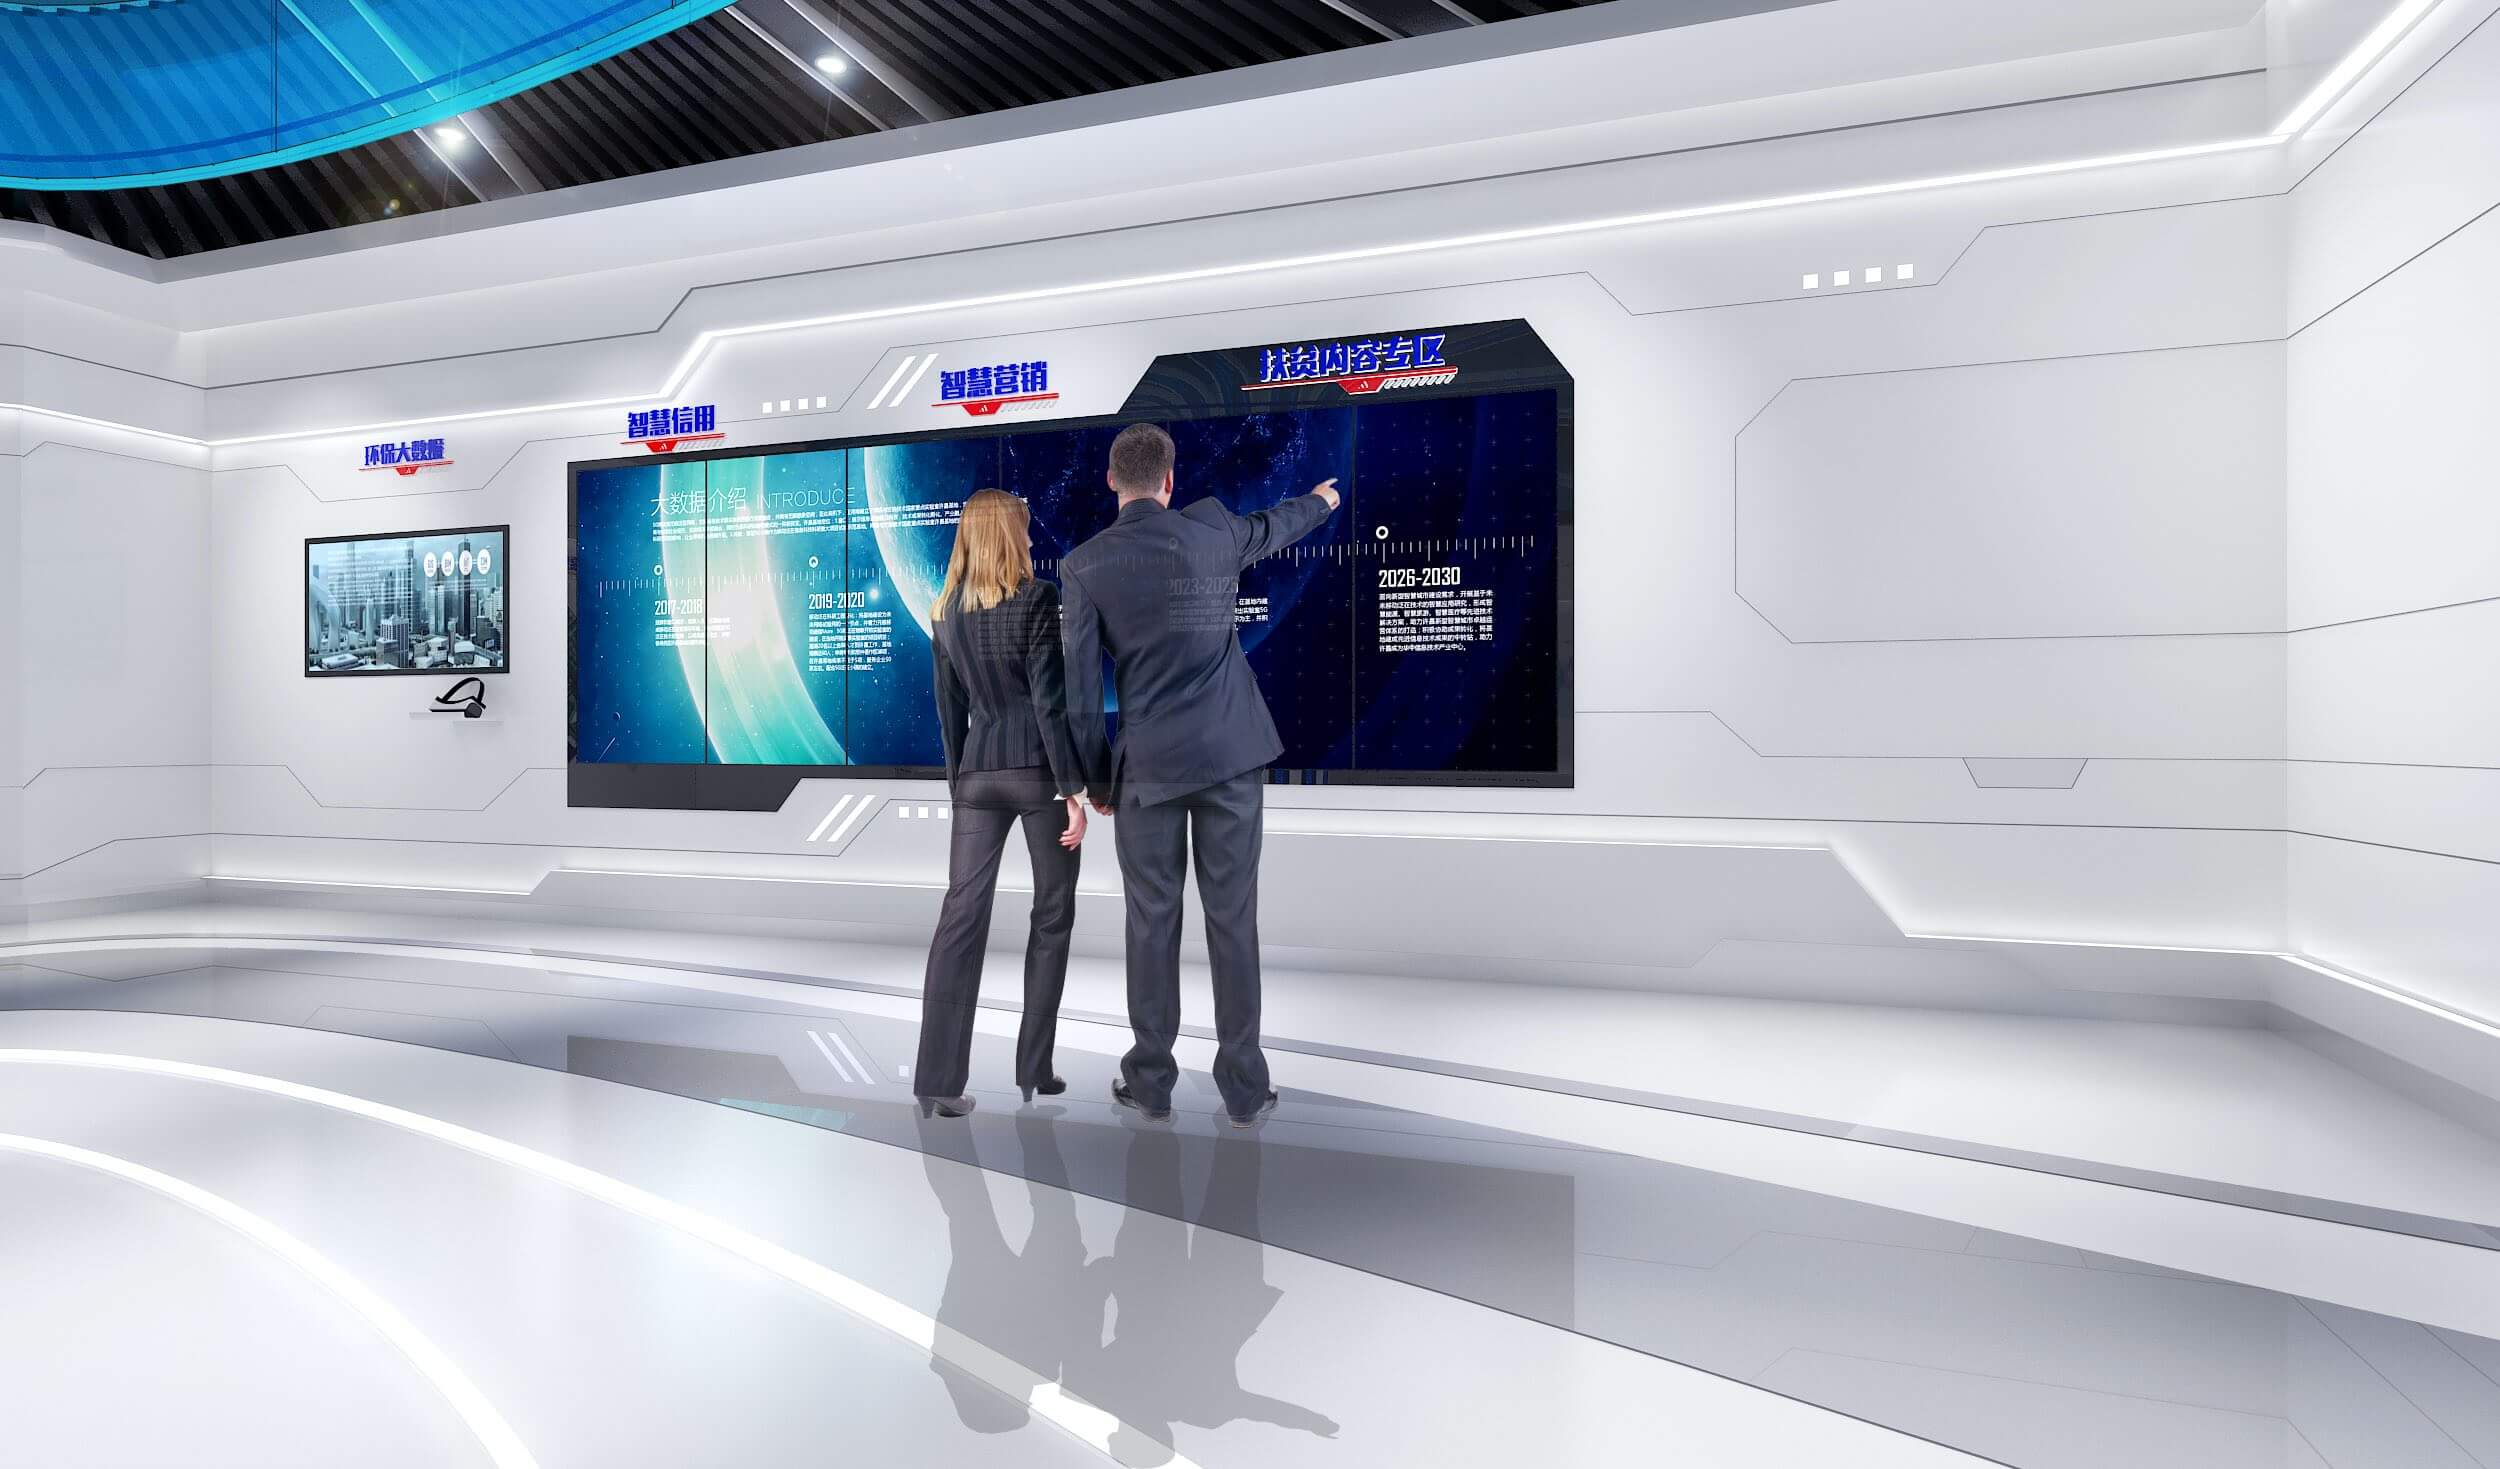 图片展示了两位穿着正装的人站在一个现代化的控制室内，正共同查看并讨论一面大型屏幕上的数据和图表。